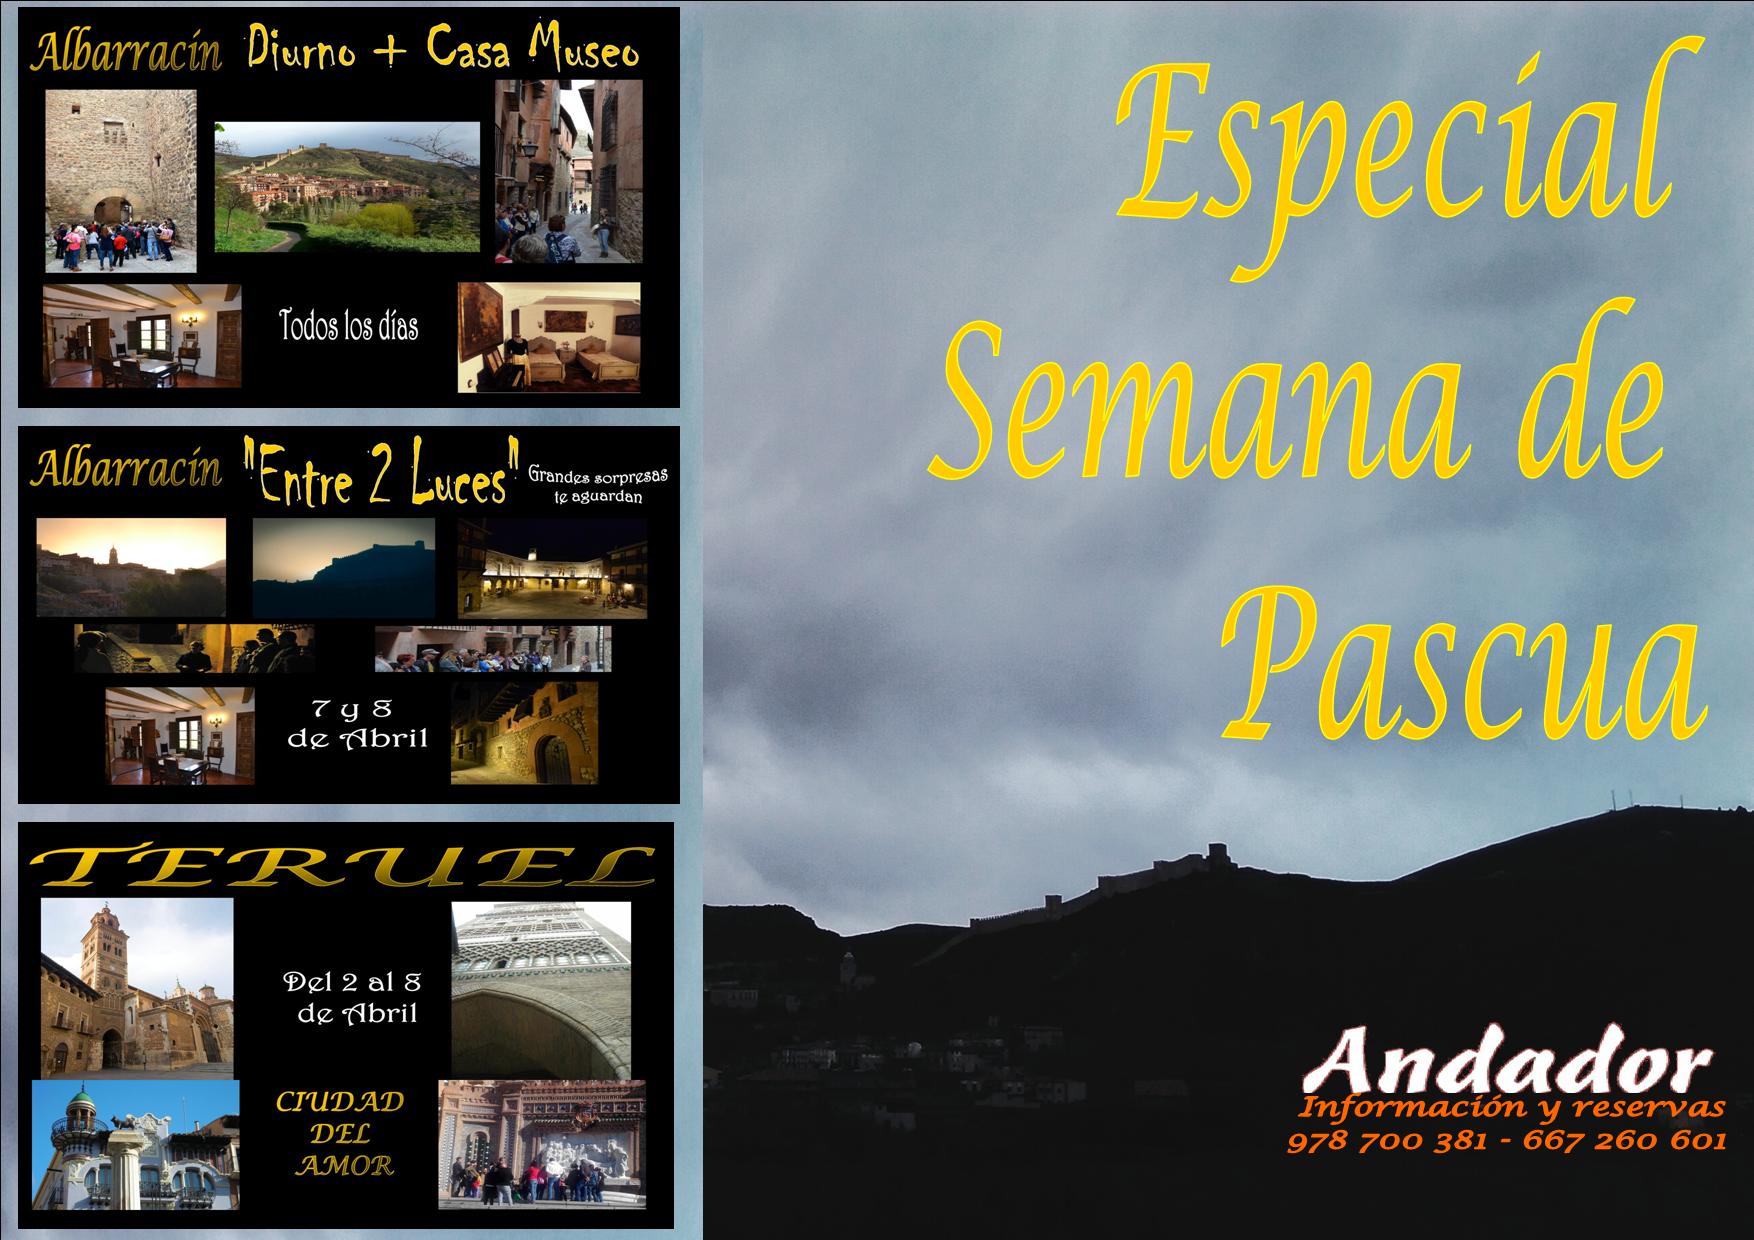 Especial SEMANA DE PASCUA en Albarracín y Teruel